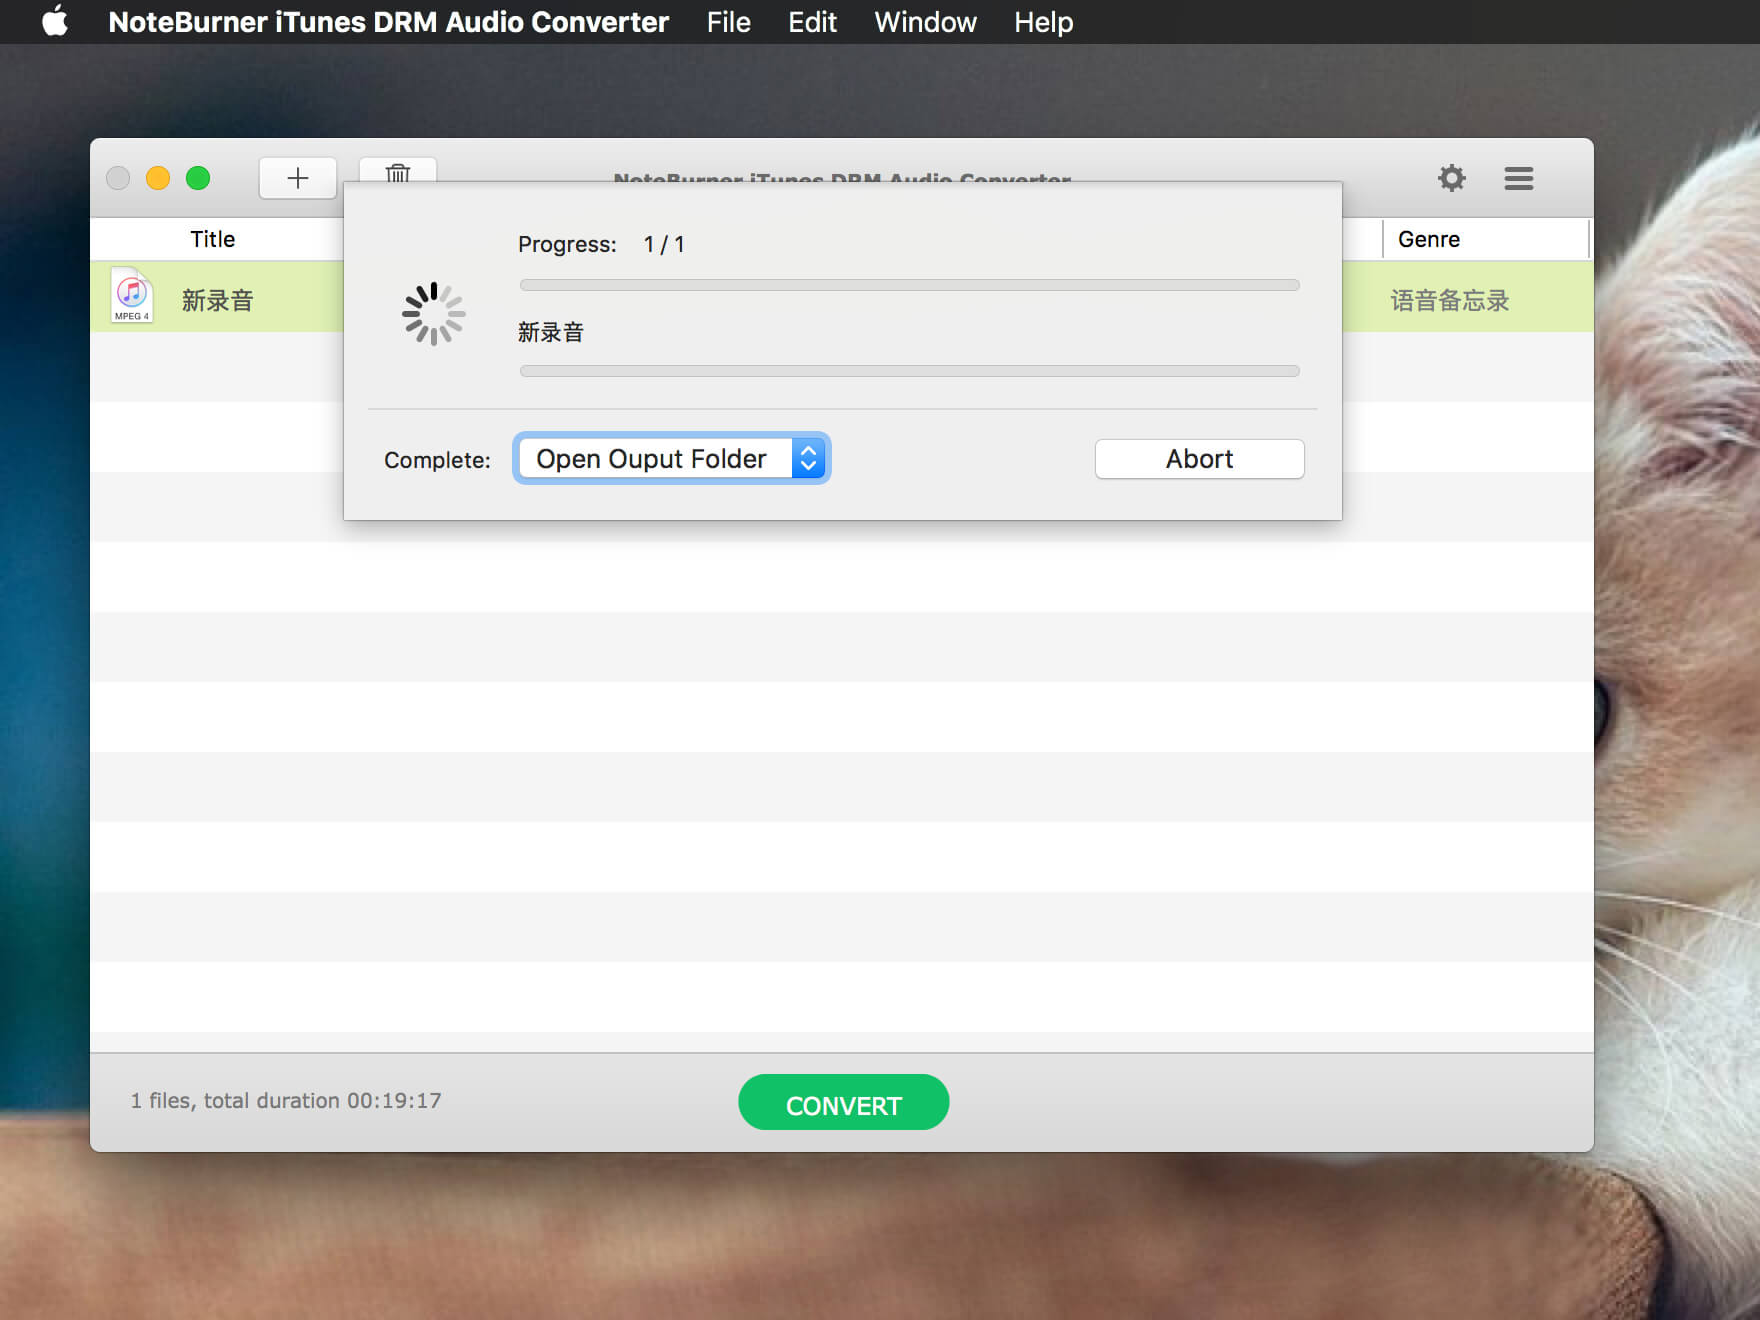 NoteBurner iTunes DRM Audio Converter 3.2.0 iTunes音乐转换工具